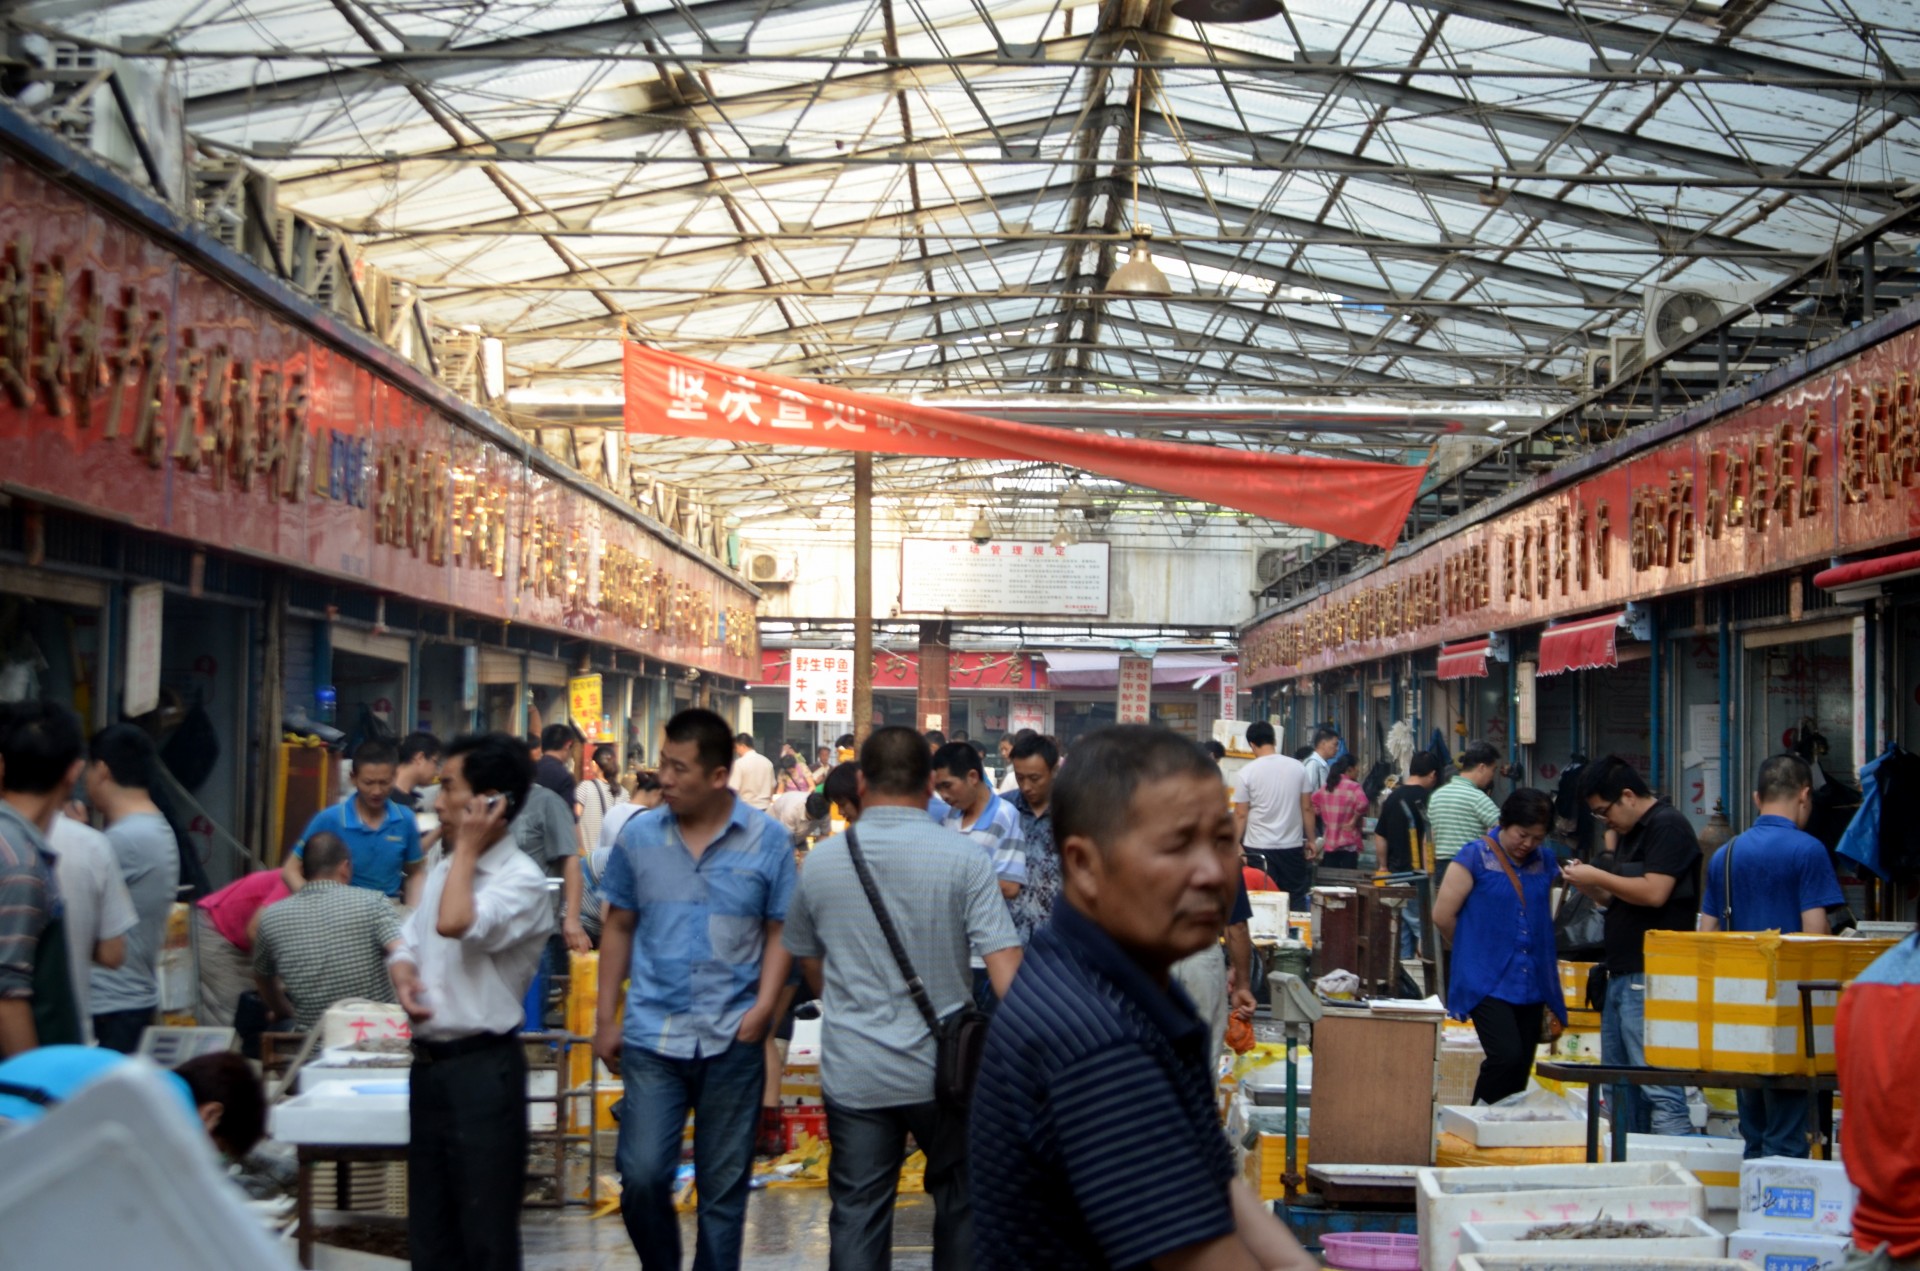 O mercado de Wuhan de onde surgiu a COVID-19 continua ativo e nada mudou